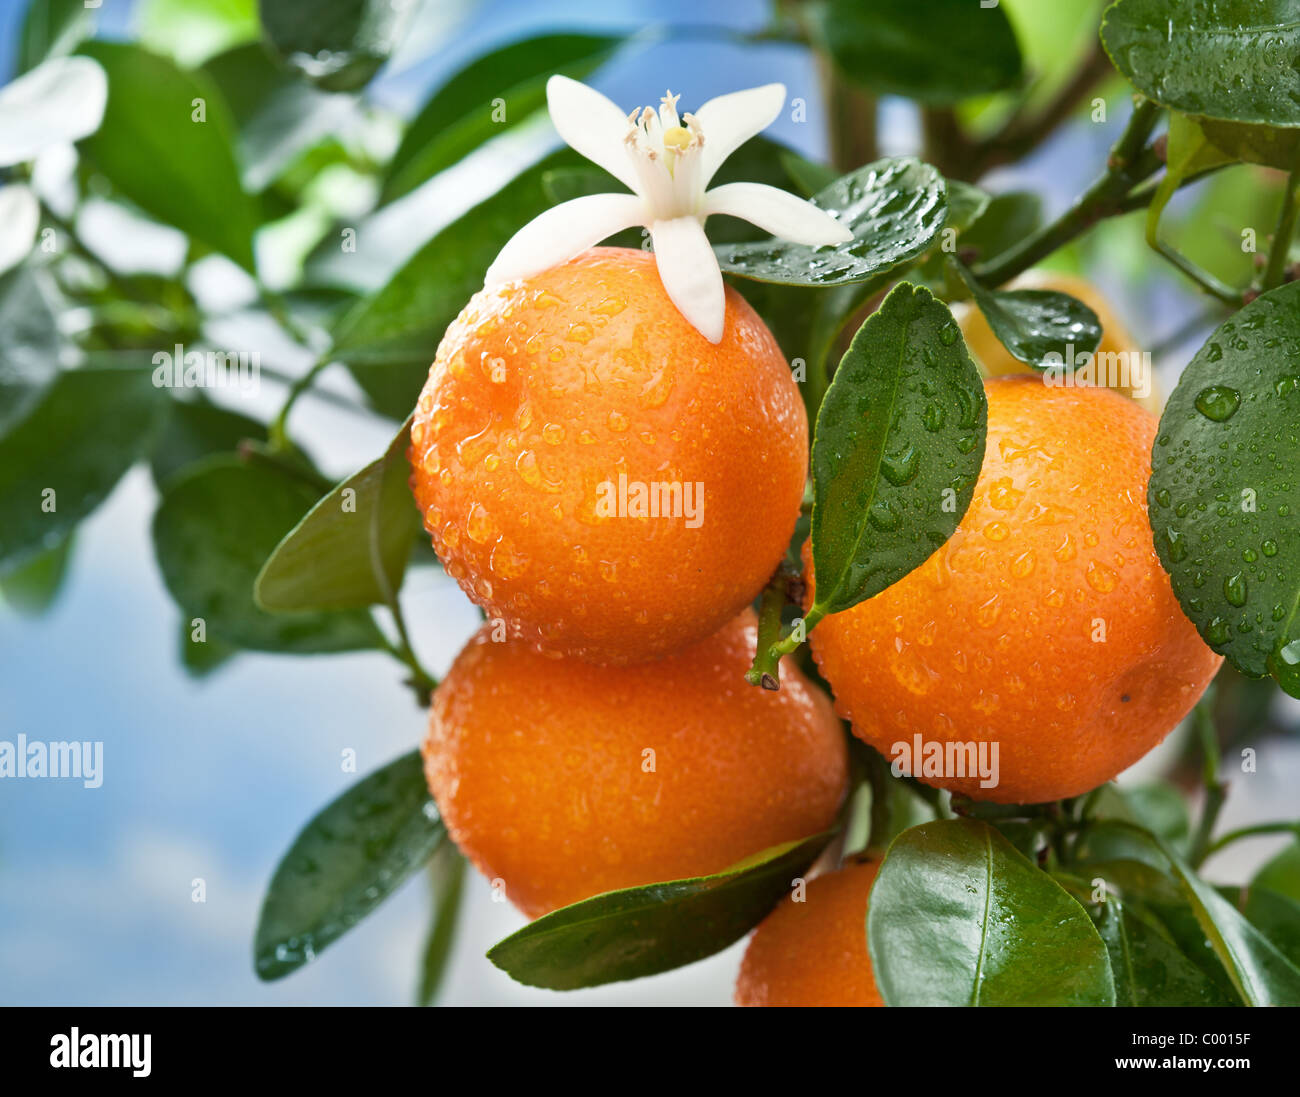 Reife Mandarinen auf einem Ast. Blauen Himmel im Hintergrund. Stockfoto